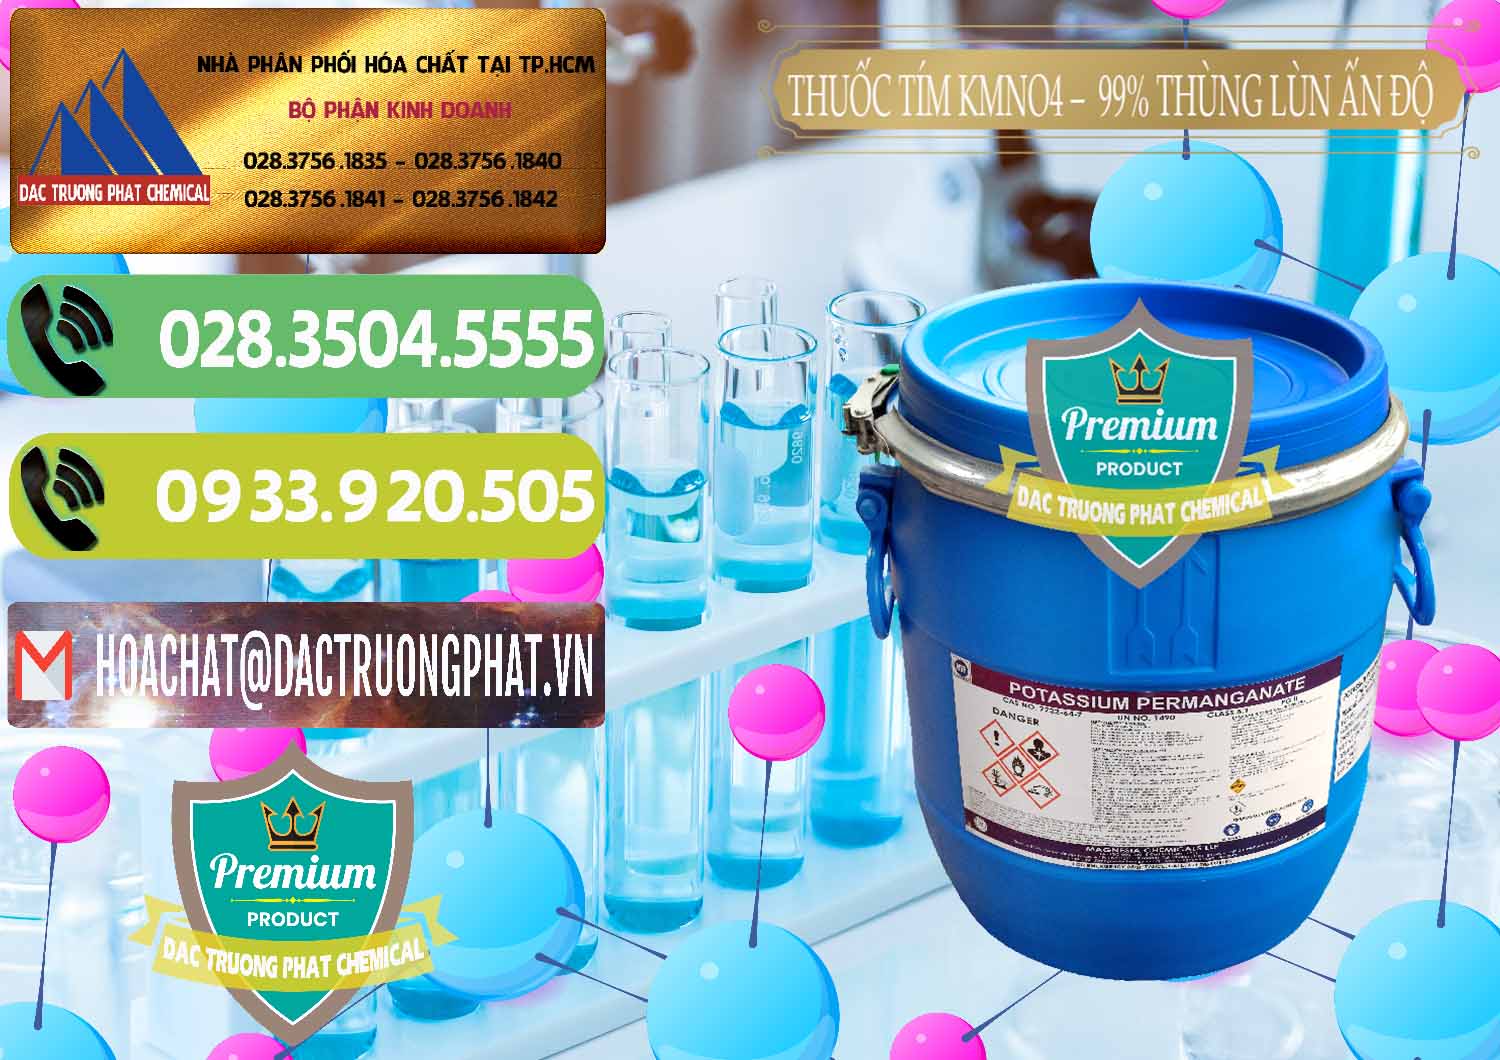 Nơi chuyên cung ứng - bán Thuốc Tím - KMNO4 Thùng Lùn 99% Magnesia Chemicals Ấn Độ India - 0165 - Cty phân phối & kinh doanh hóa chất tại TP.HCM - hoachatmientay.vn